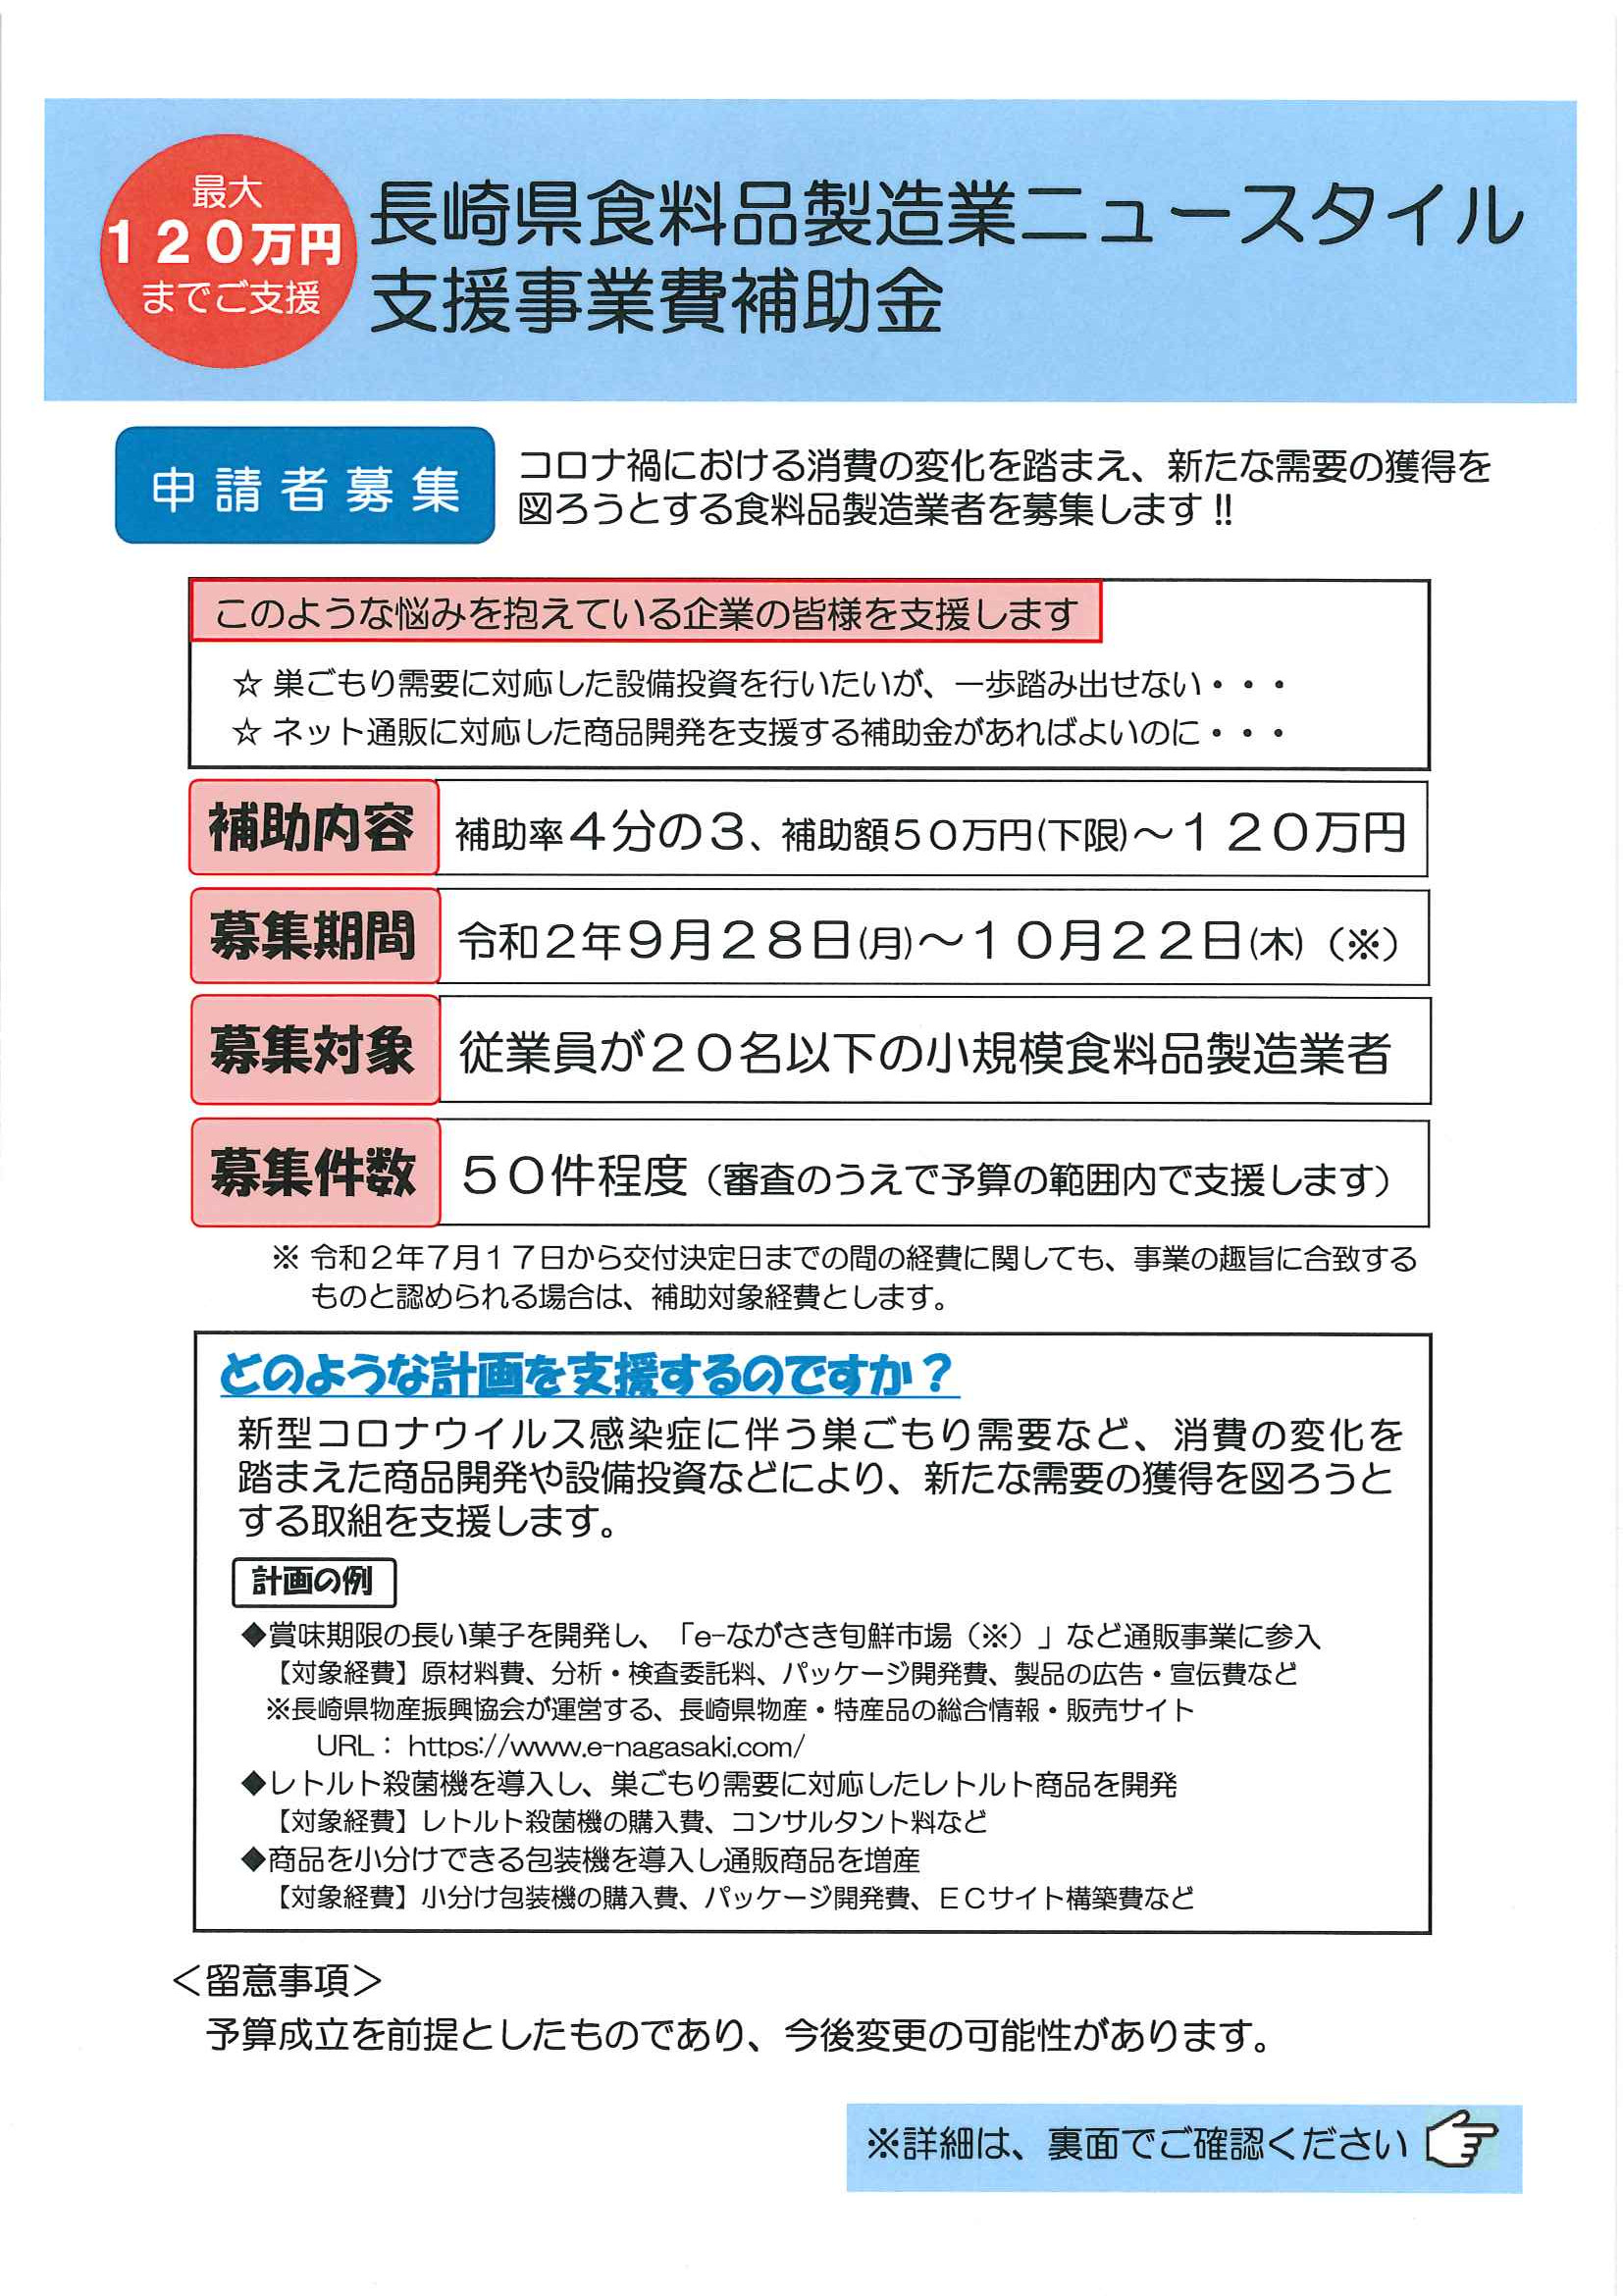 【公募開始】長崎県食料品製造業ニュースタイル支援事業費補助金について 